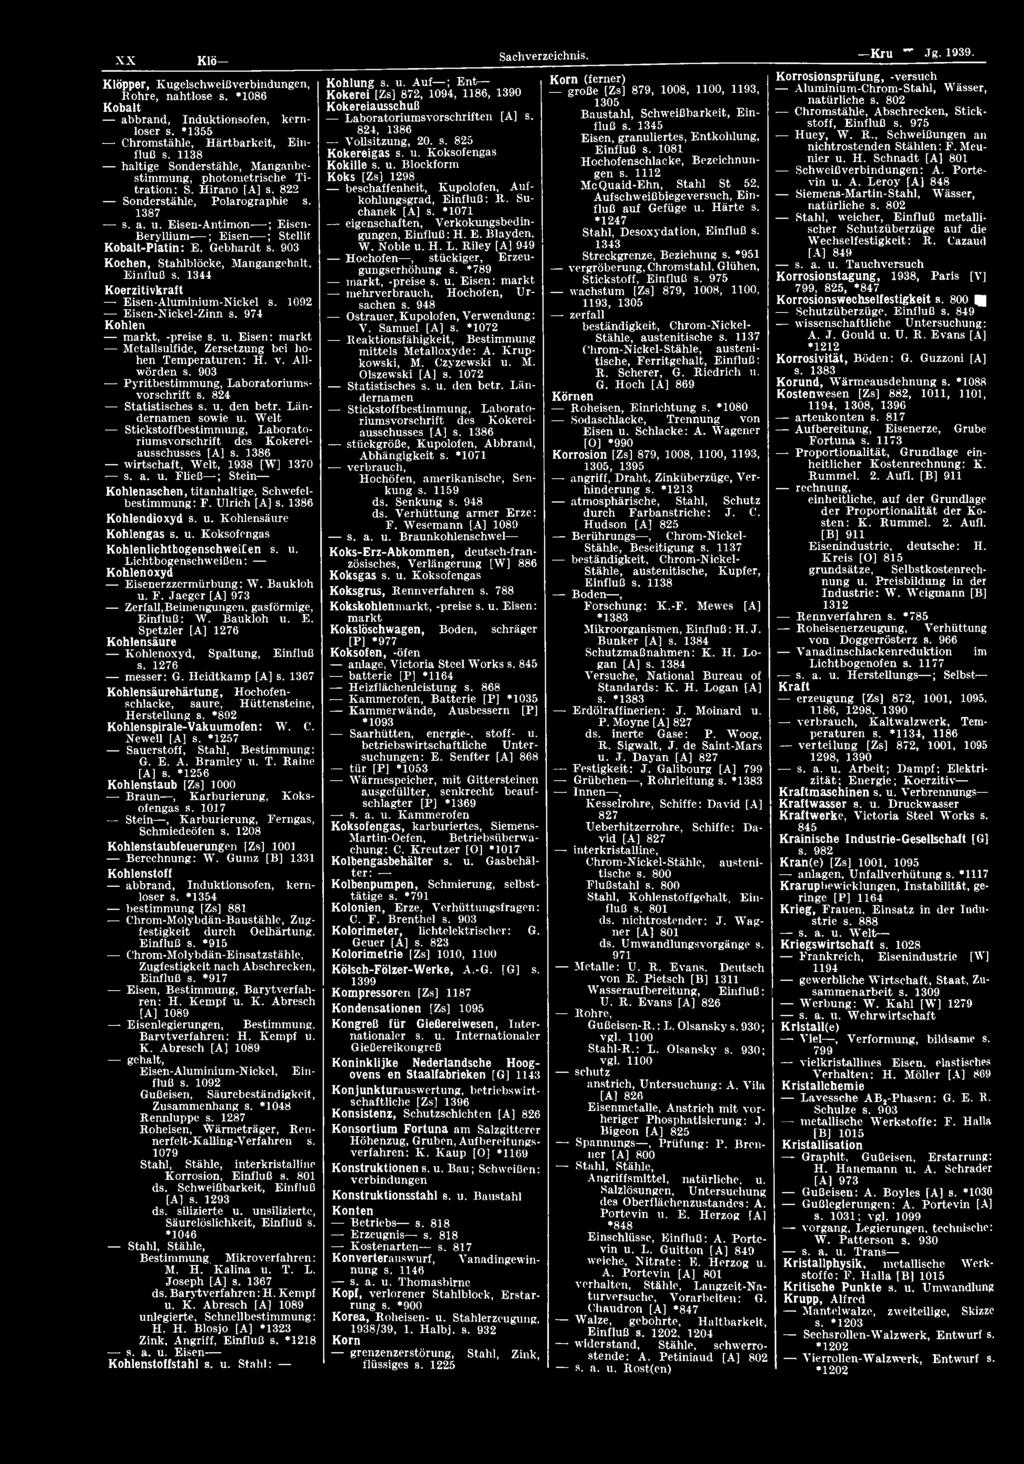 824 Statistisches s. u. den betr. Ländernamen sowie u. W elt Stickstoffbestimmung, Laboratorium svorschrift des Kokereiausschusses [A] s. 1386 W irtschaft, Welt, 1938 [W] 1370 s. a. u. Fließ ; Stein Kohlenaschen, titanhaltige, Schwefelbestimmung: F.